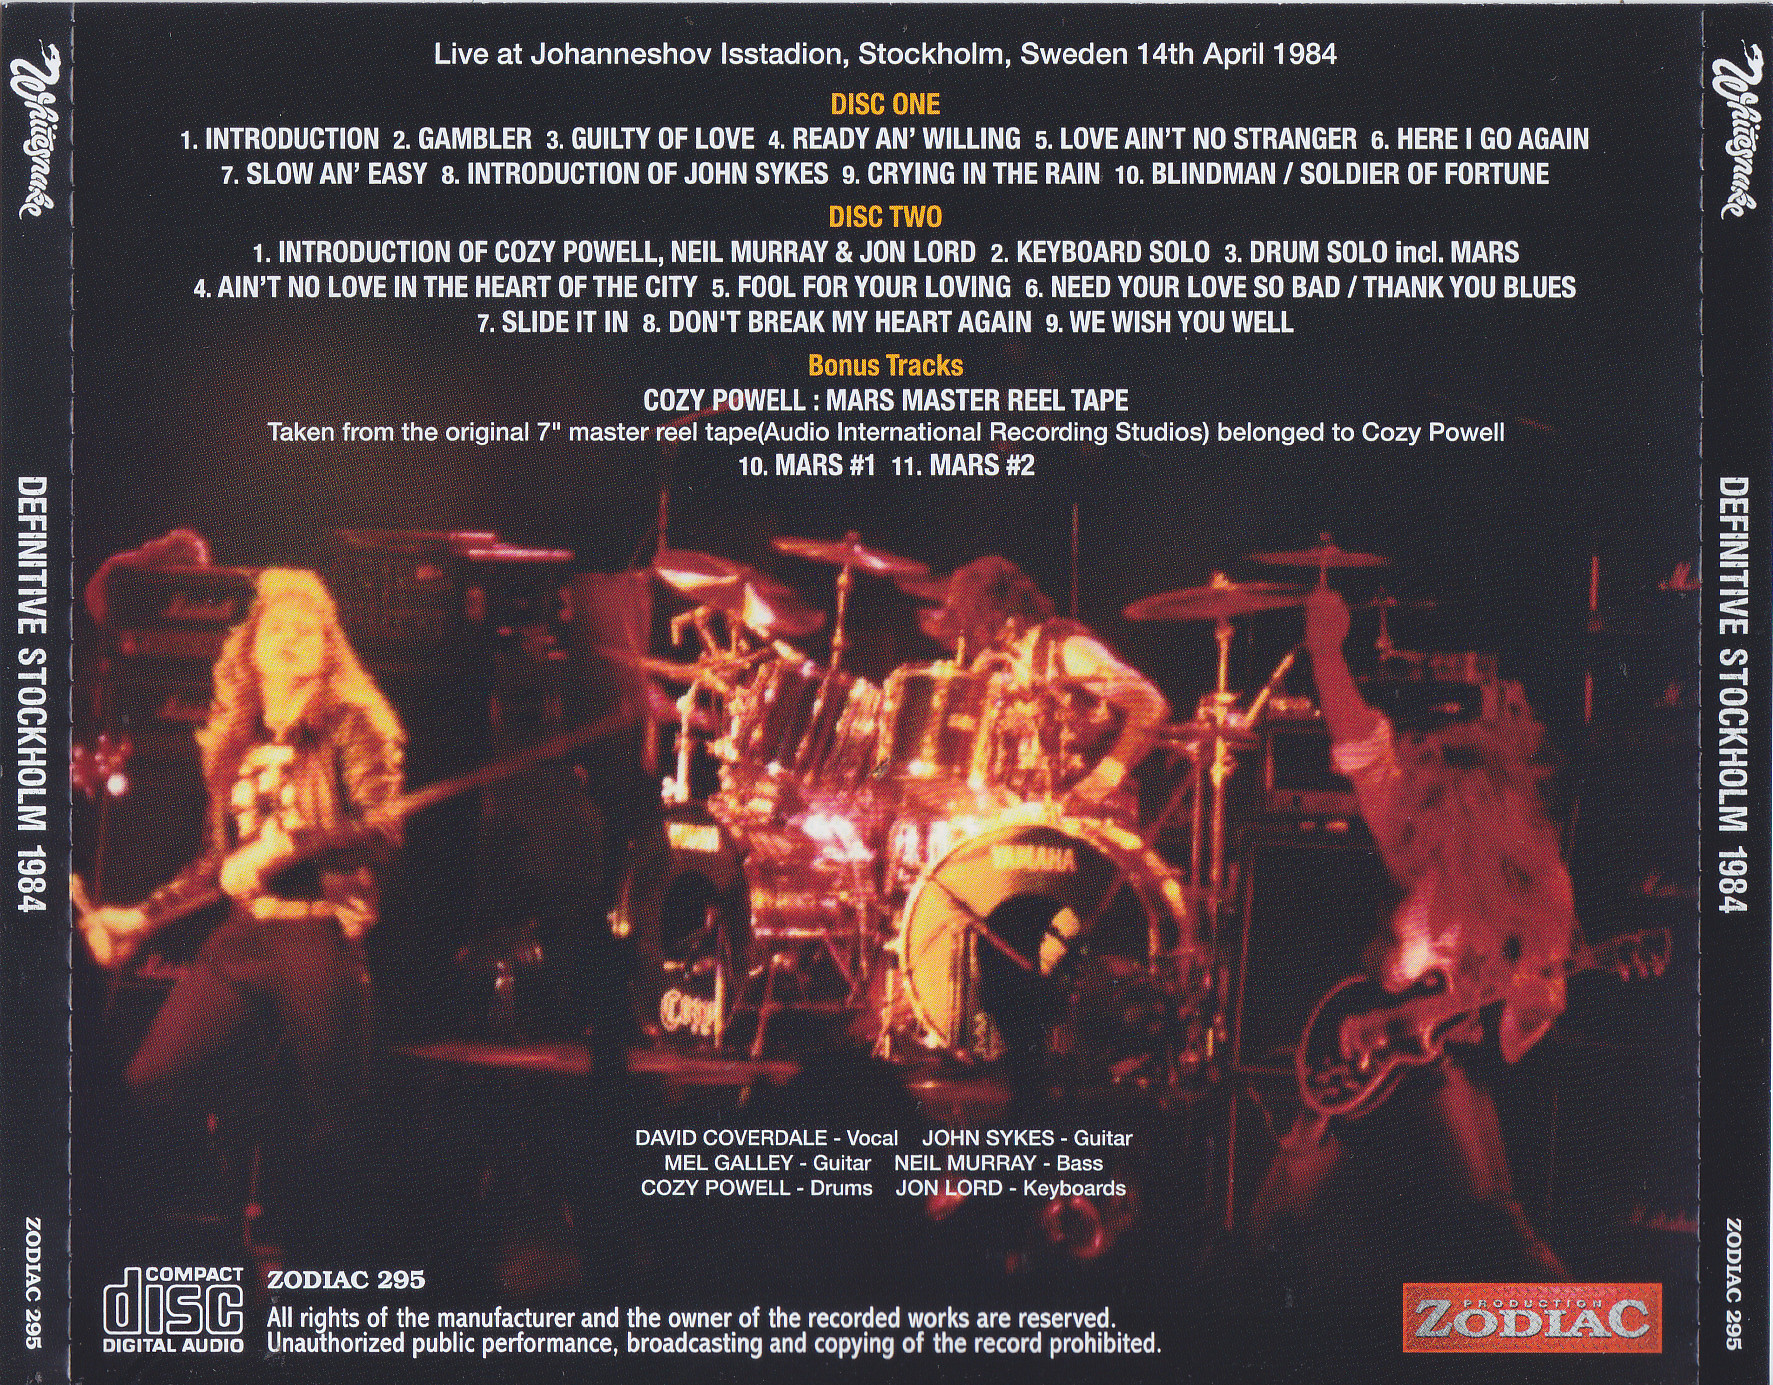 Whitesnake / Definitive Stockholm 1984 / 2CD+1Bonus DVDR – GiGinJapan